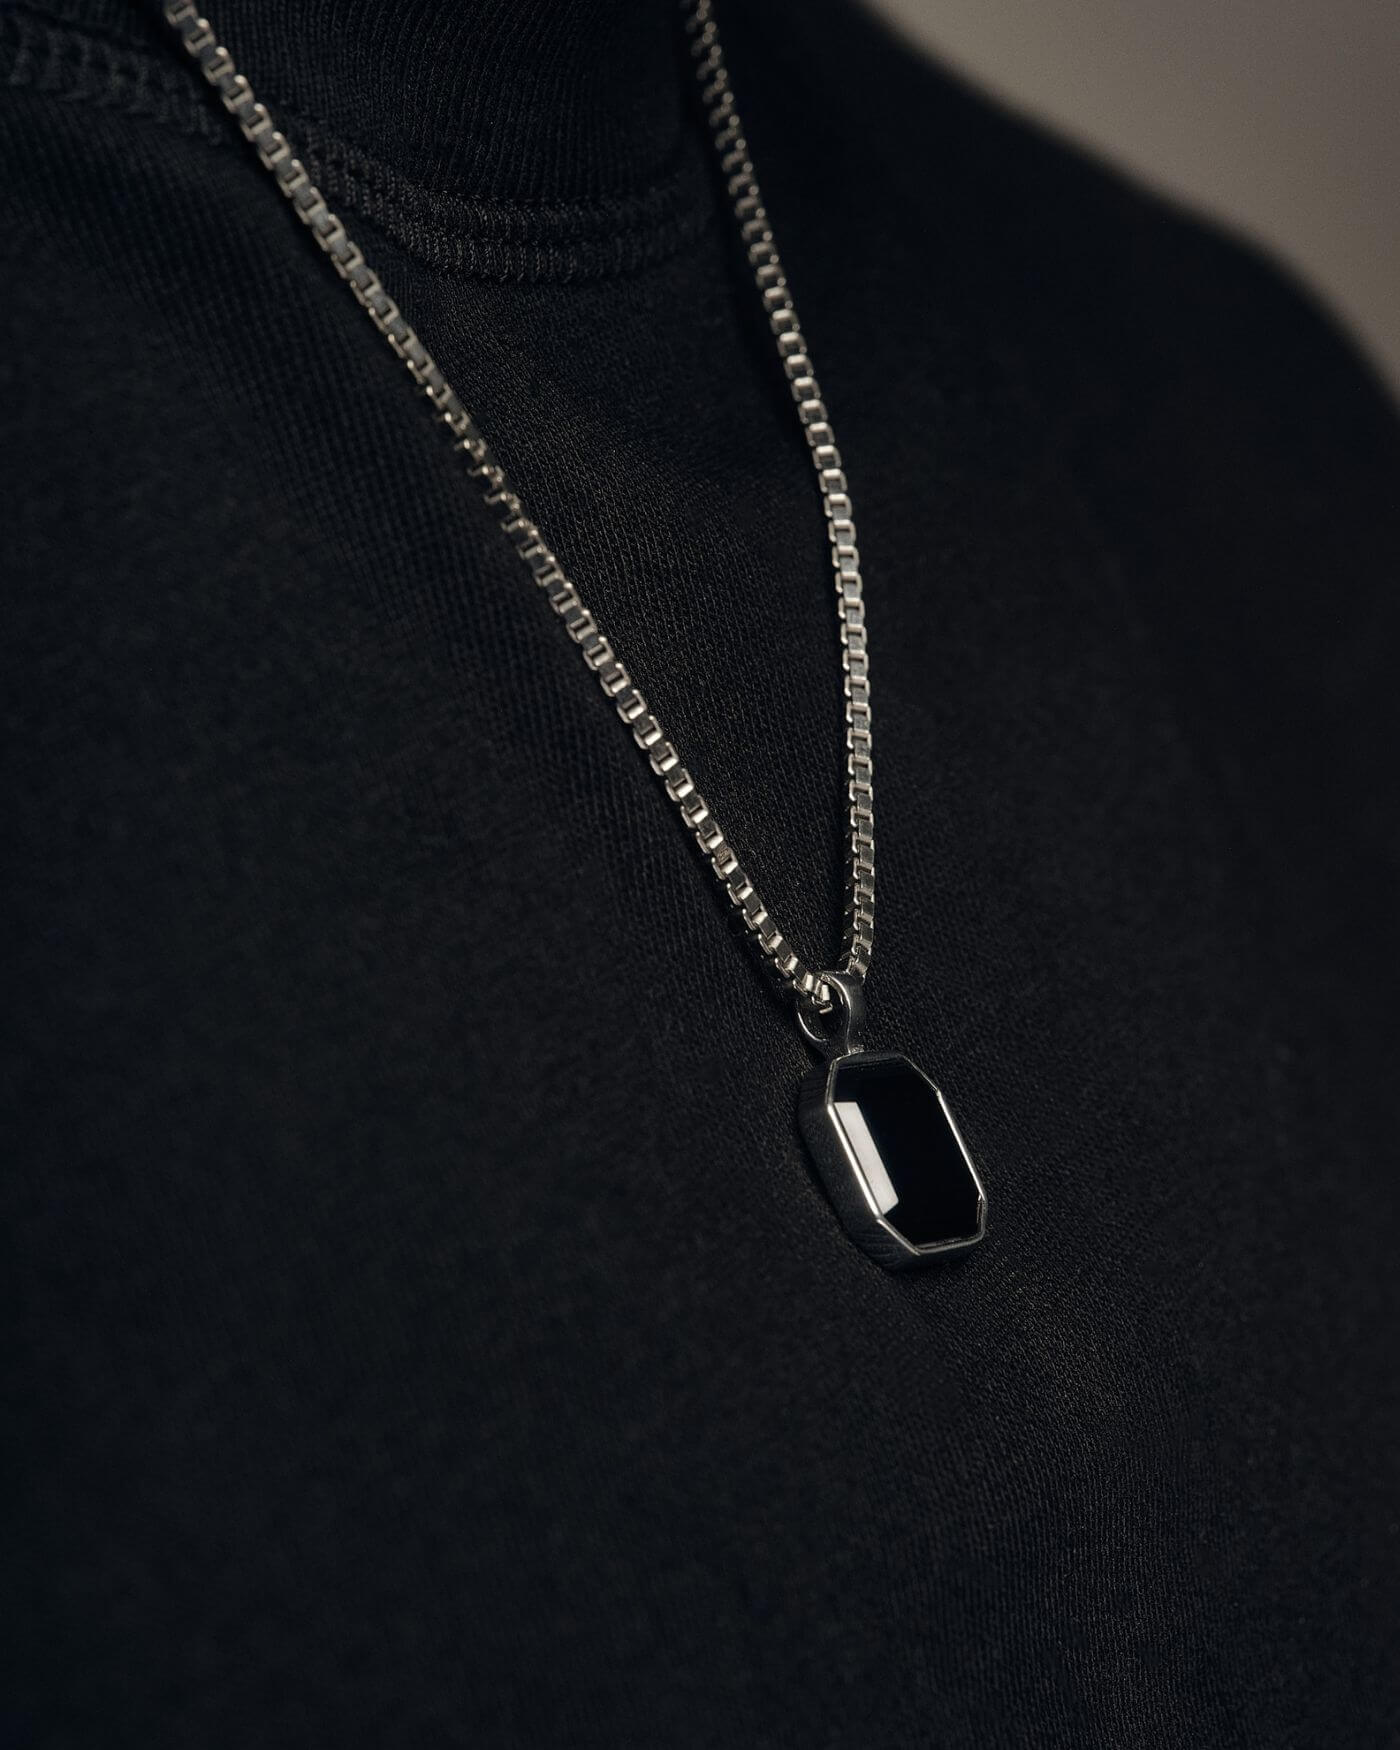 Halskette - Onyx - Silber - Für Ihn